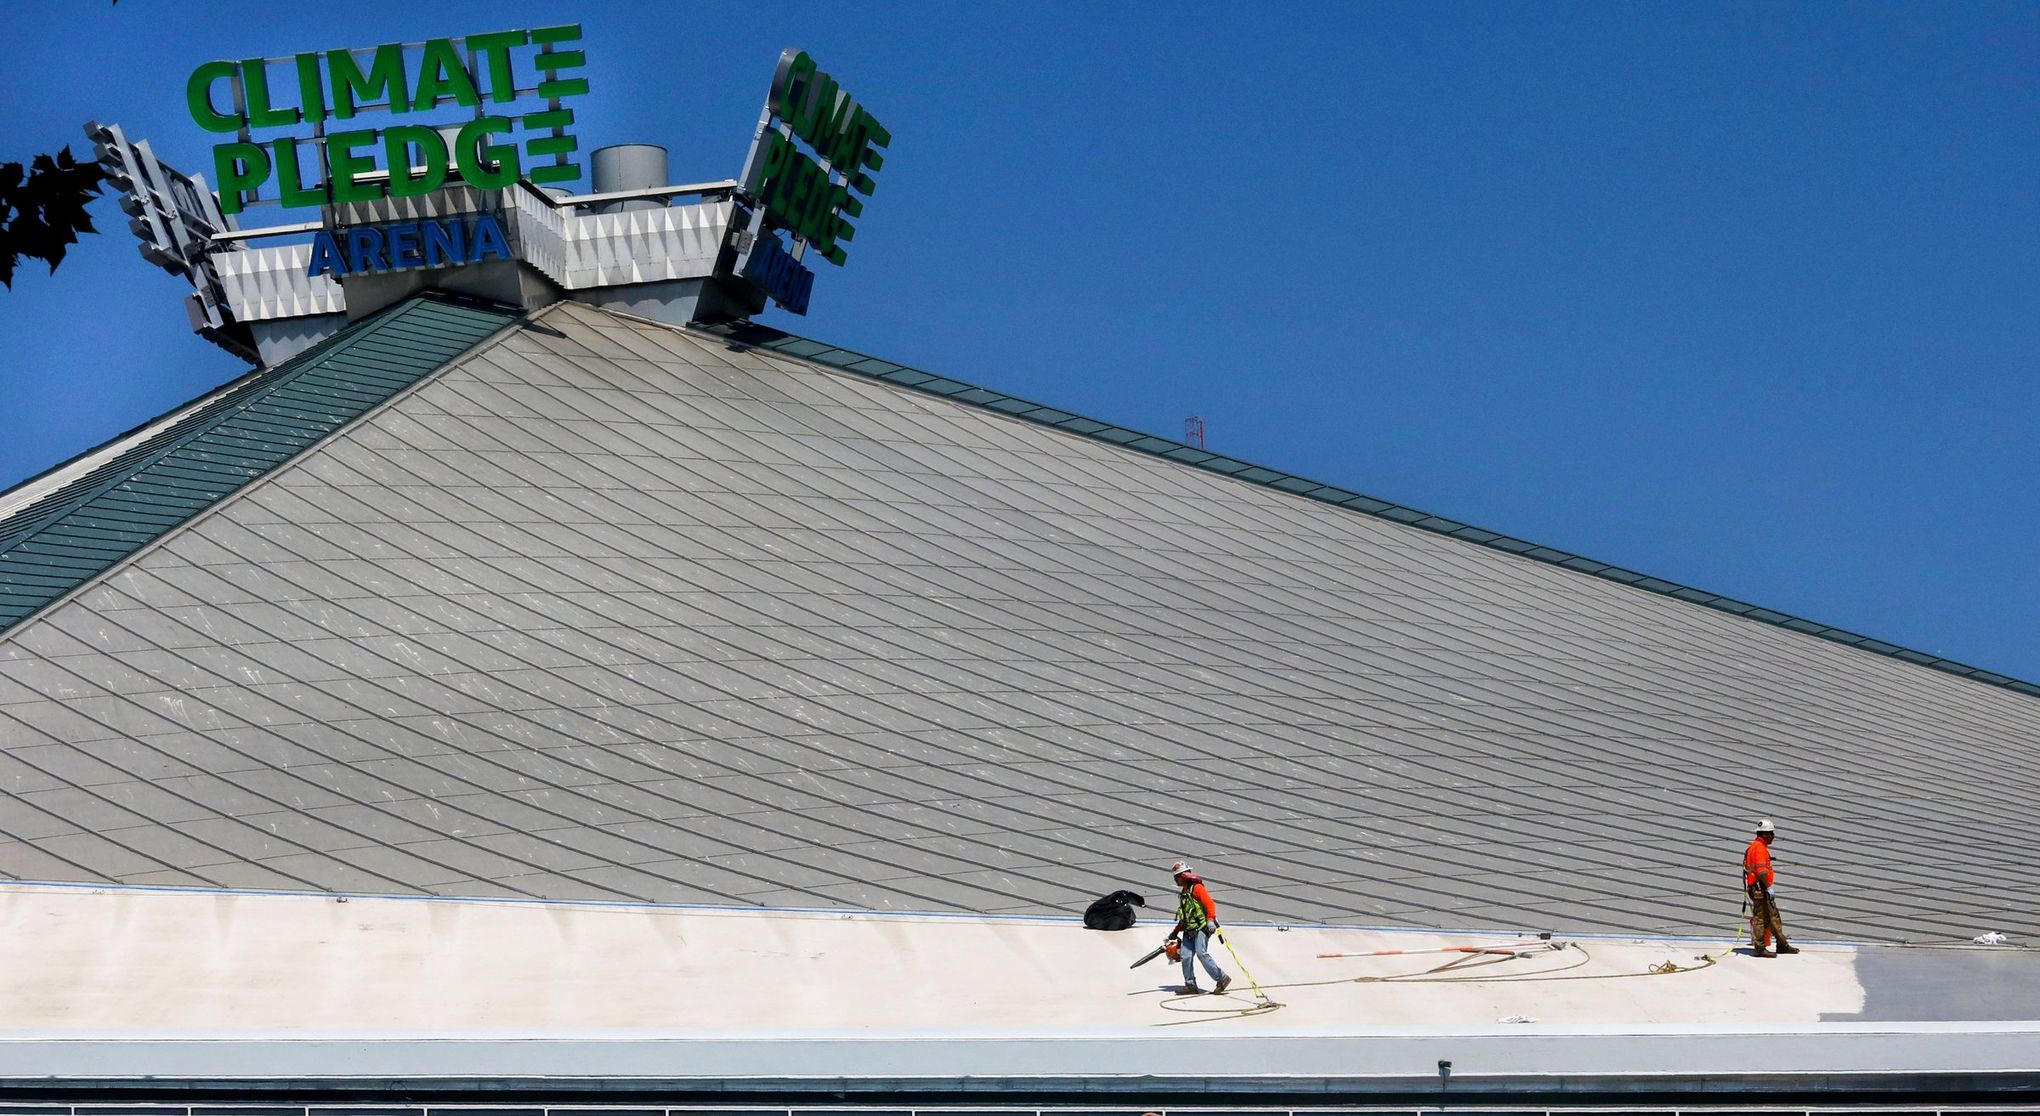 Seattle Kraken Home Opener – Climate Pledge Arena